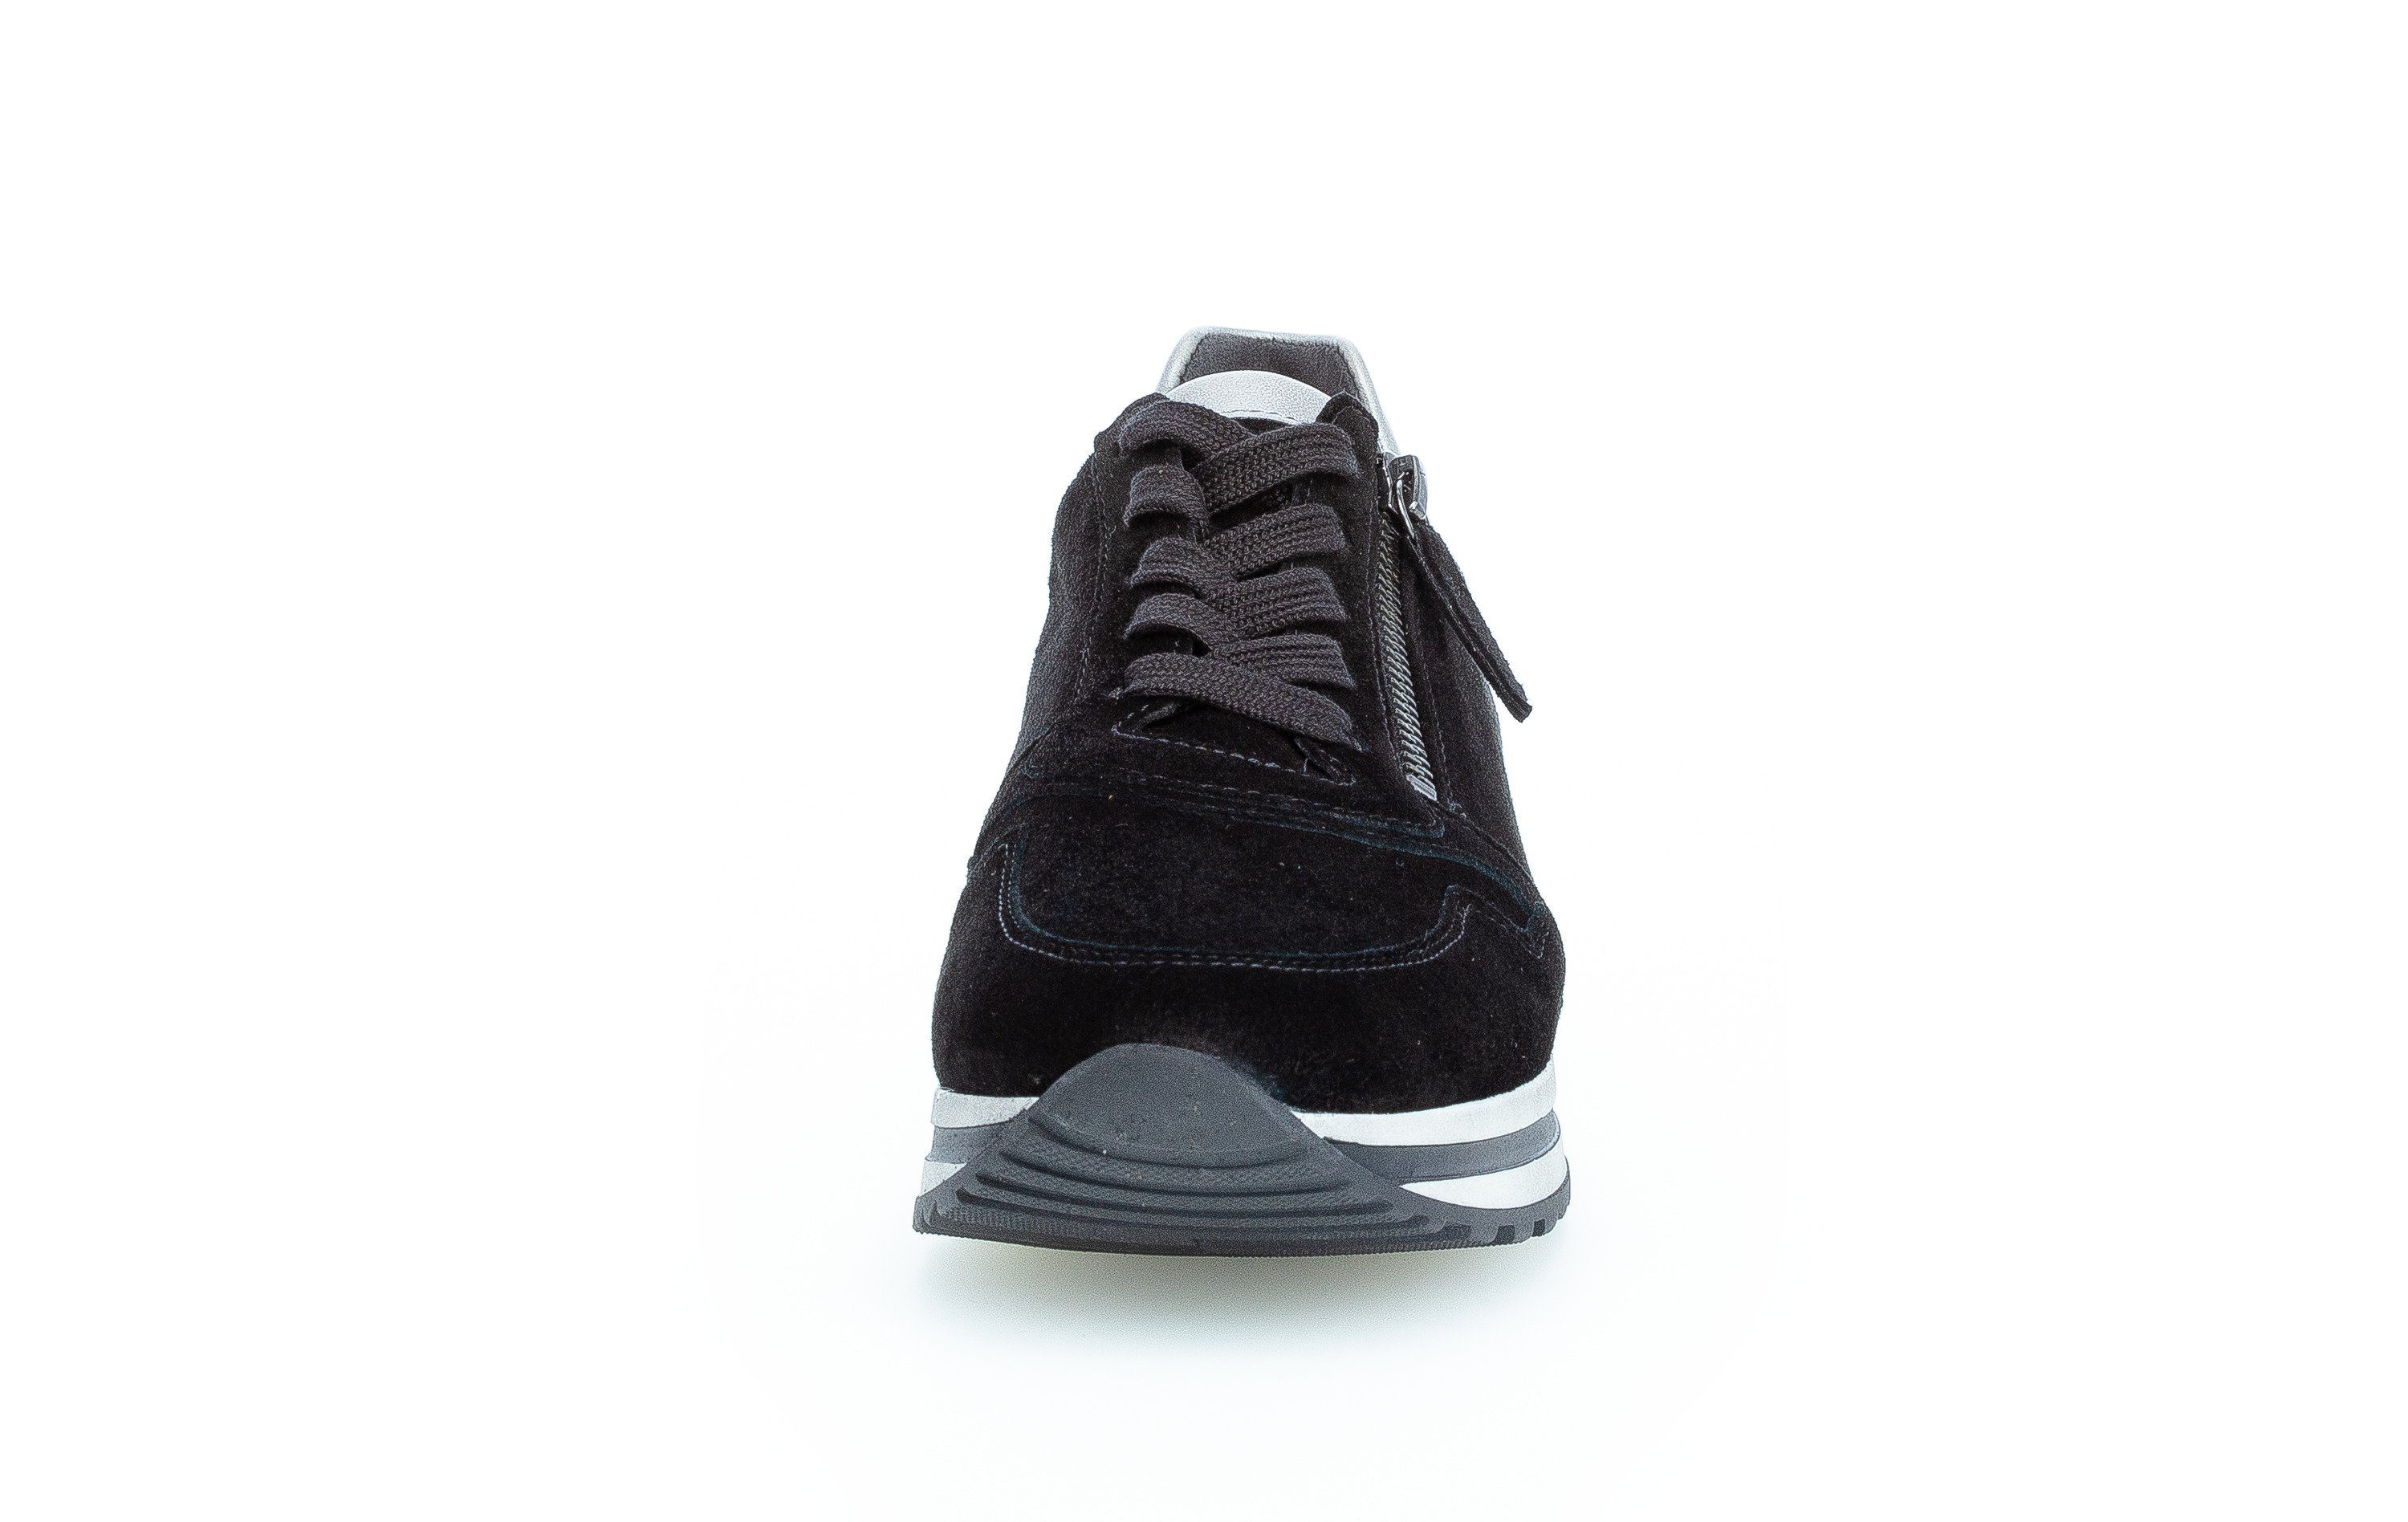 schwarz-bunt-kombiniert-schwarz-bunt-kombiniert Gabor Comfort Sneaker